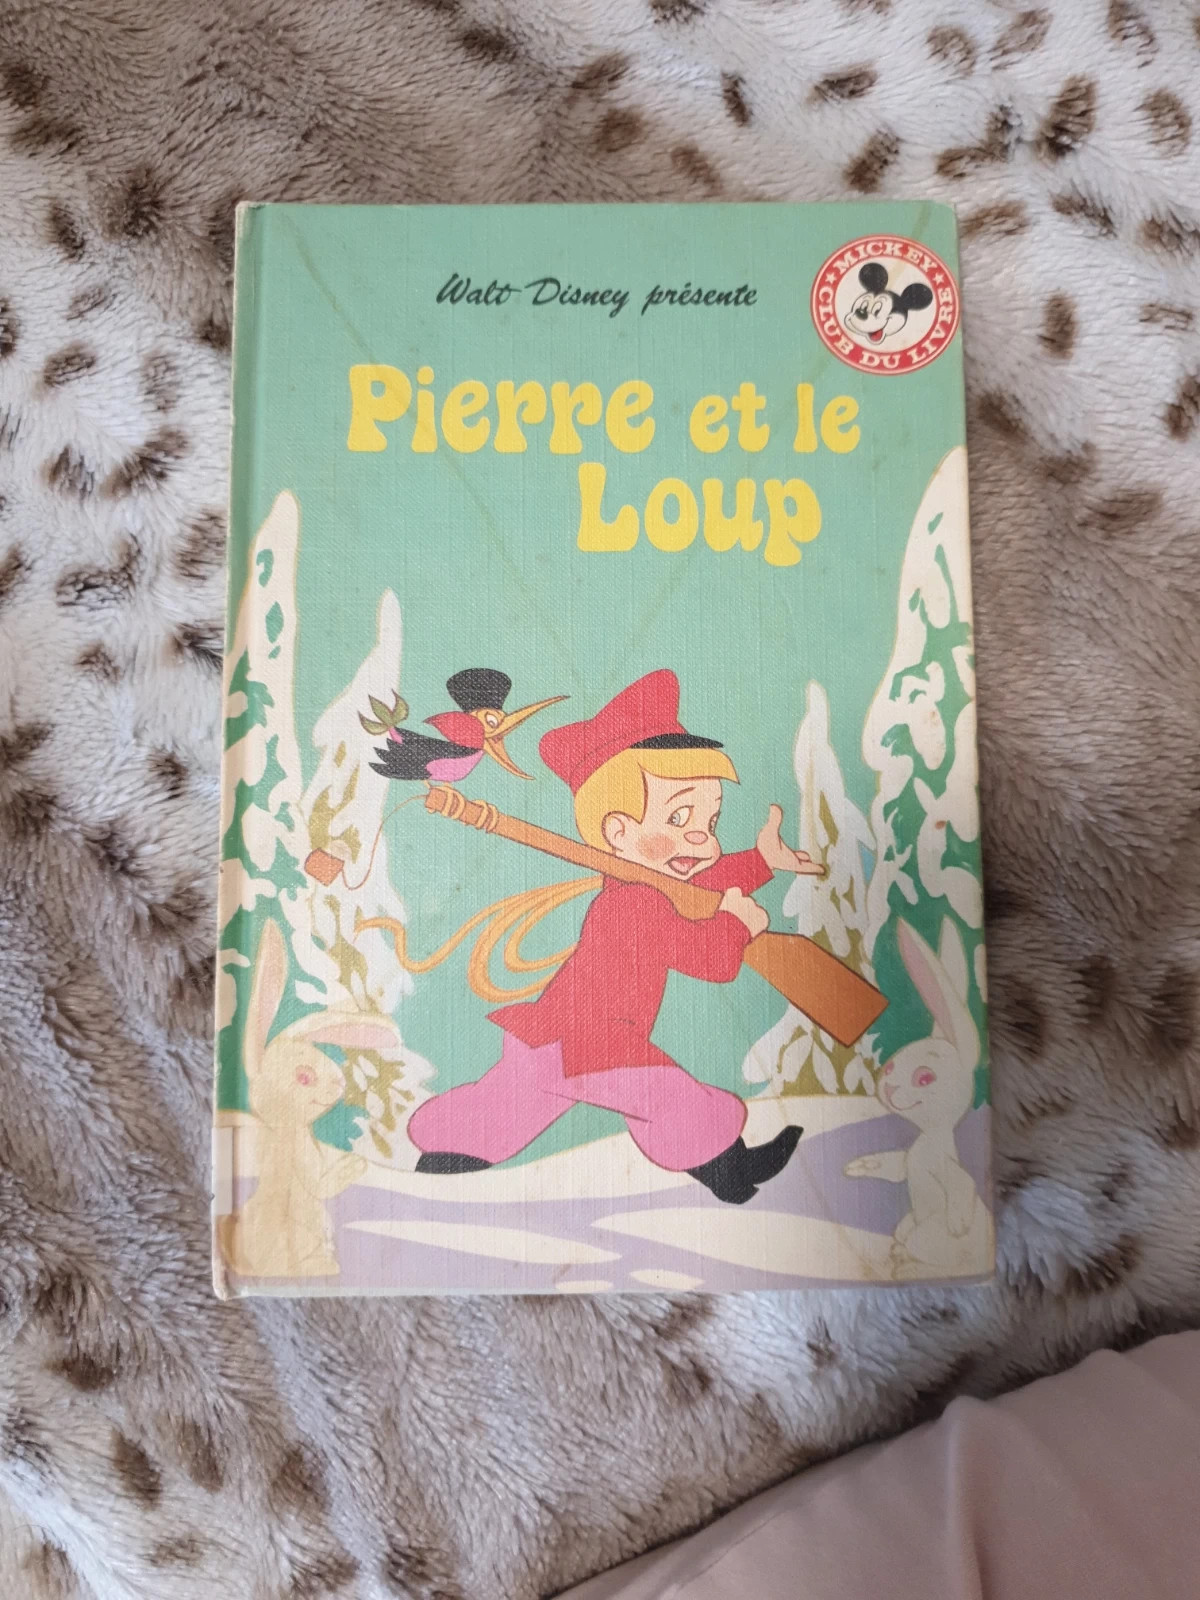 Pierre et le loup - Livre de Walt Disney